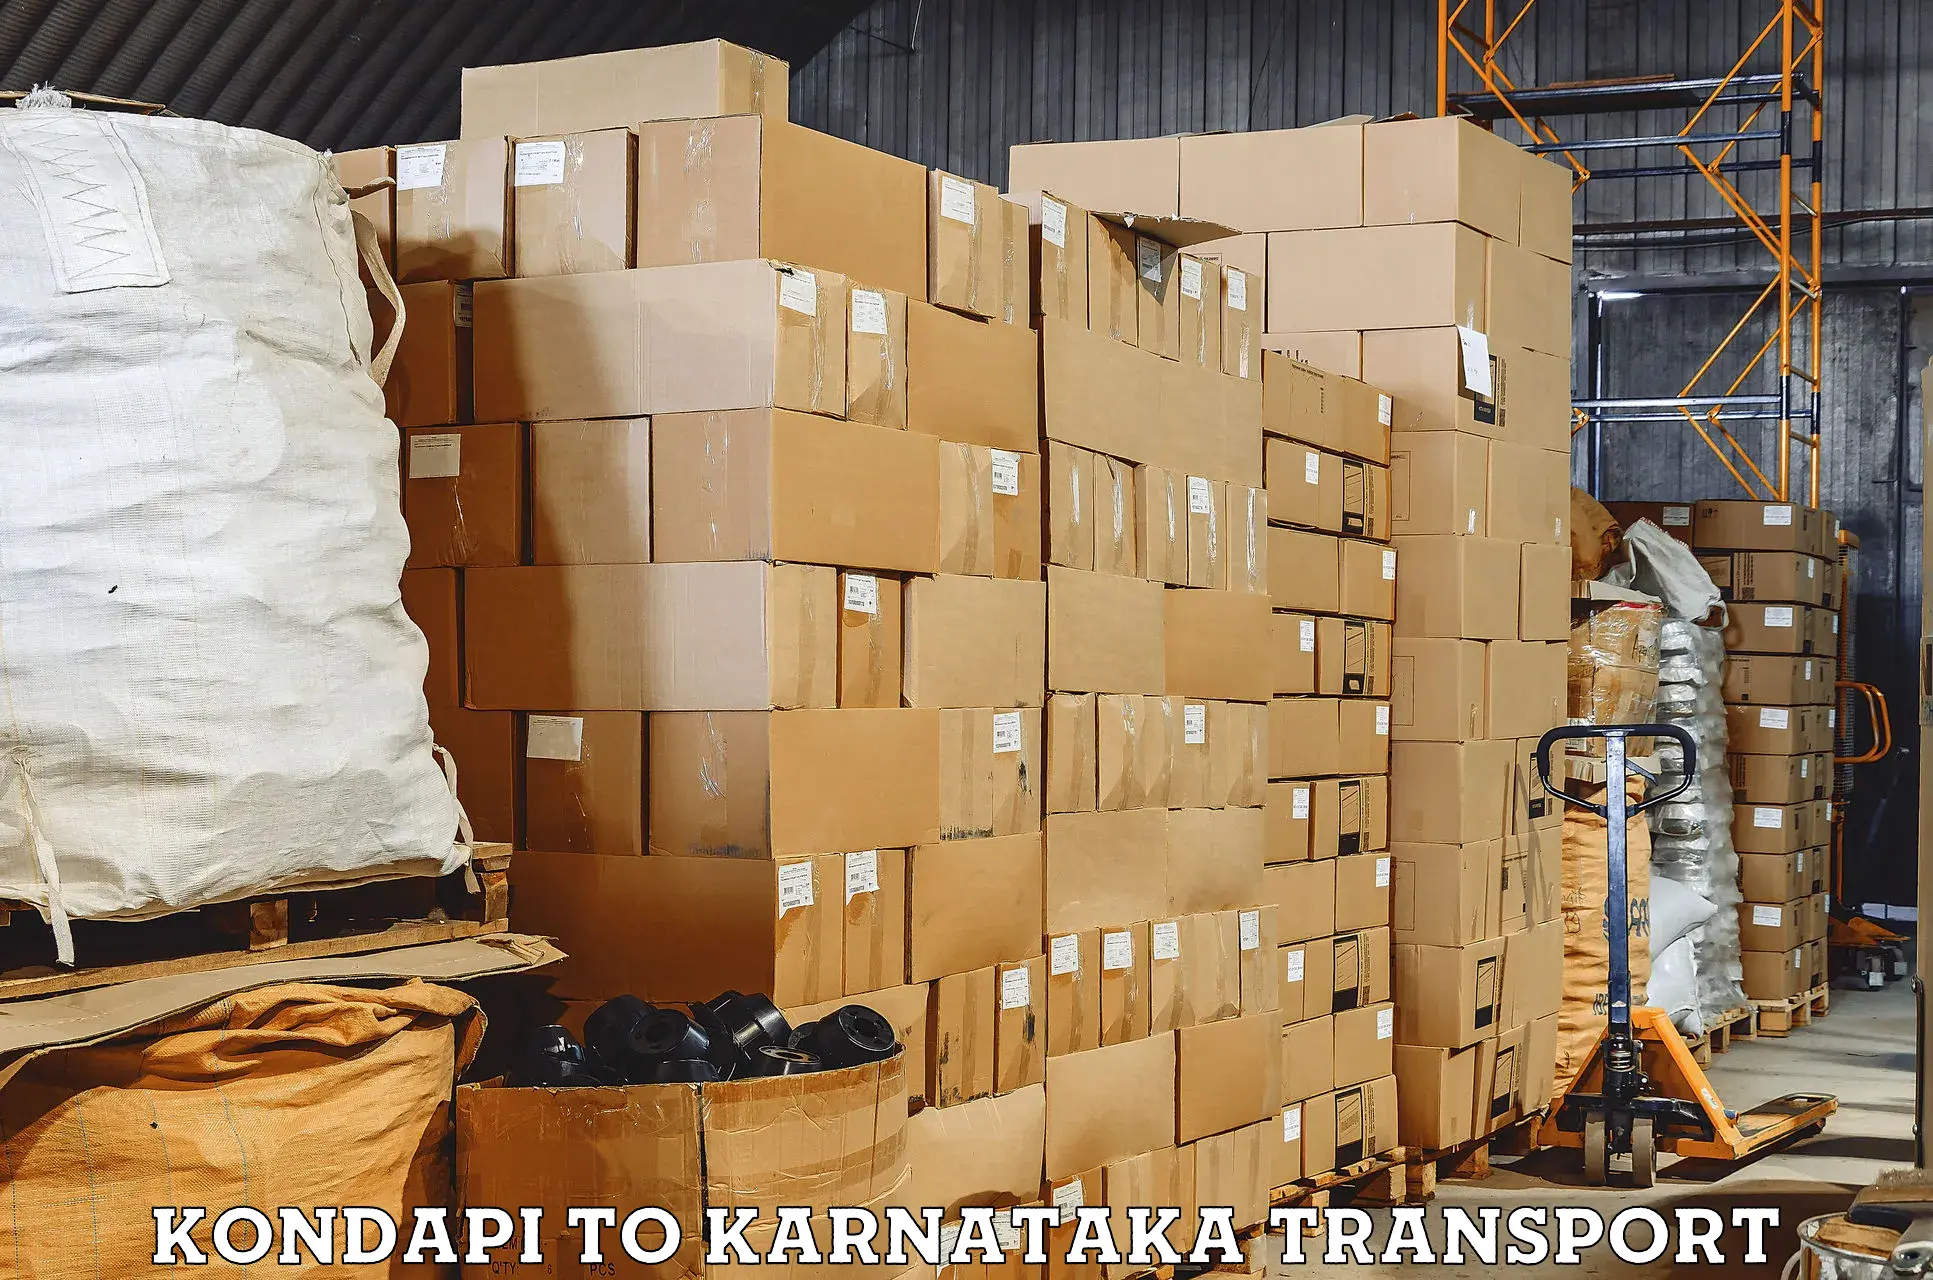 Road transport services Kondapi to Mannaekhelli